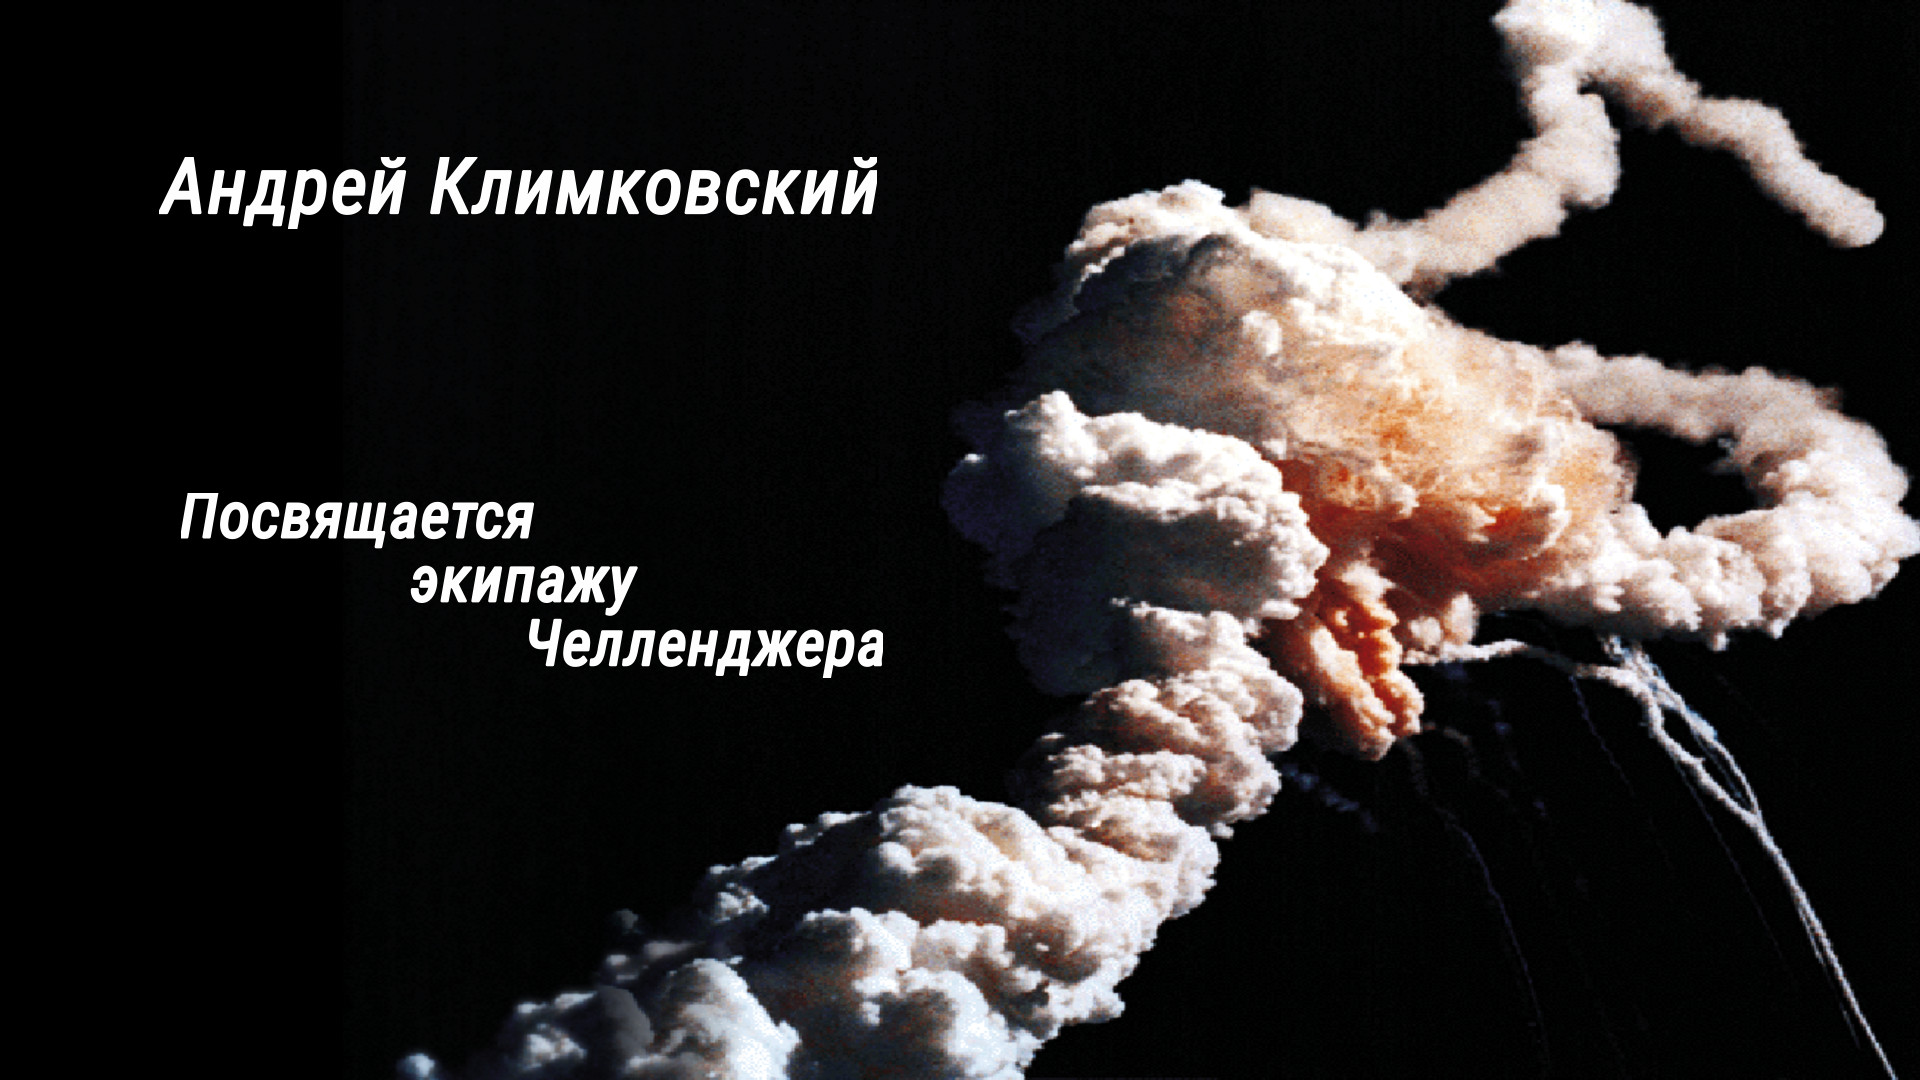 Альбом «Посвящается экипажу Челленджера» — композитор Андрей Климковский
